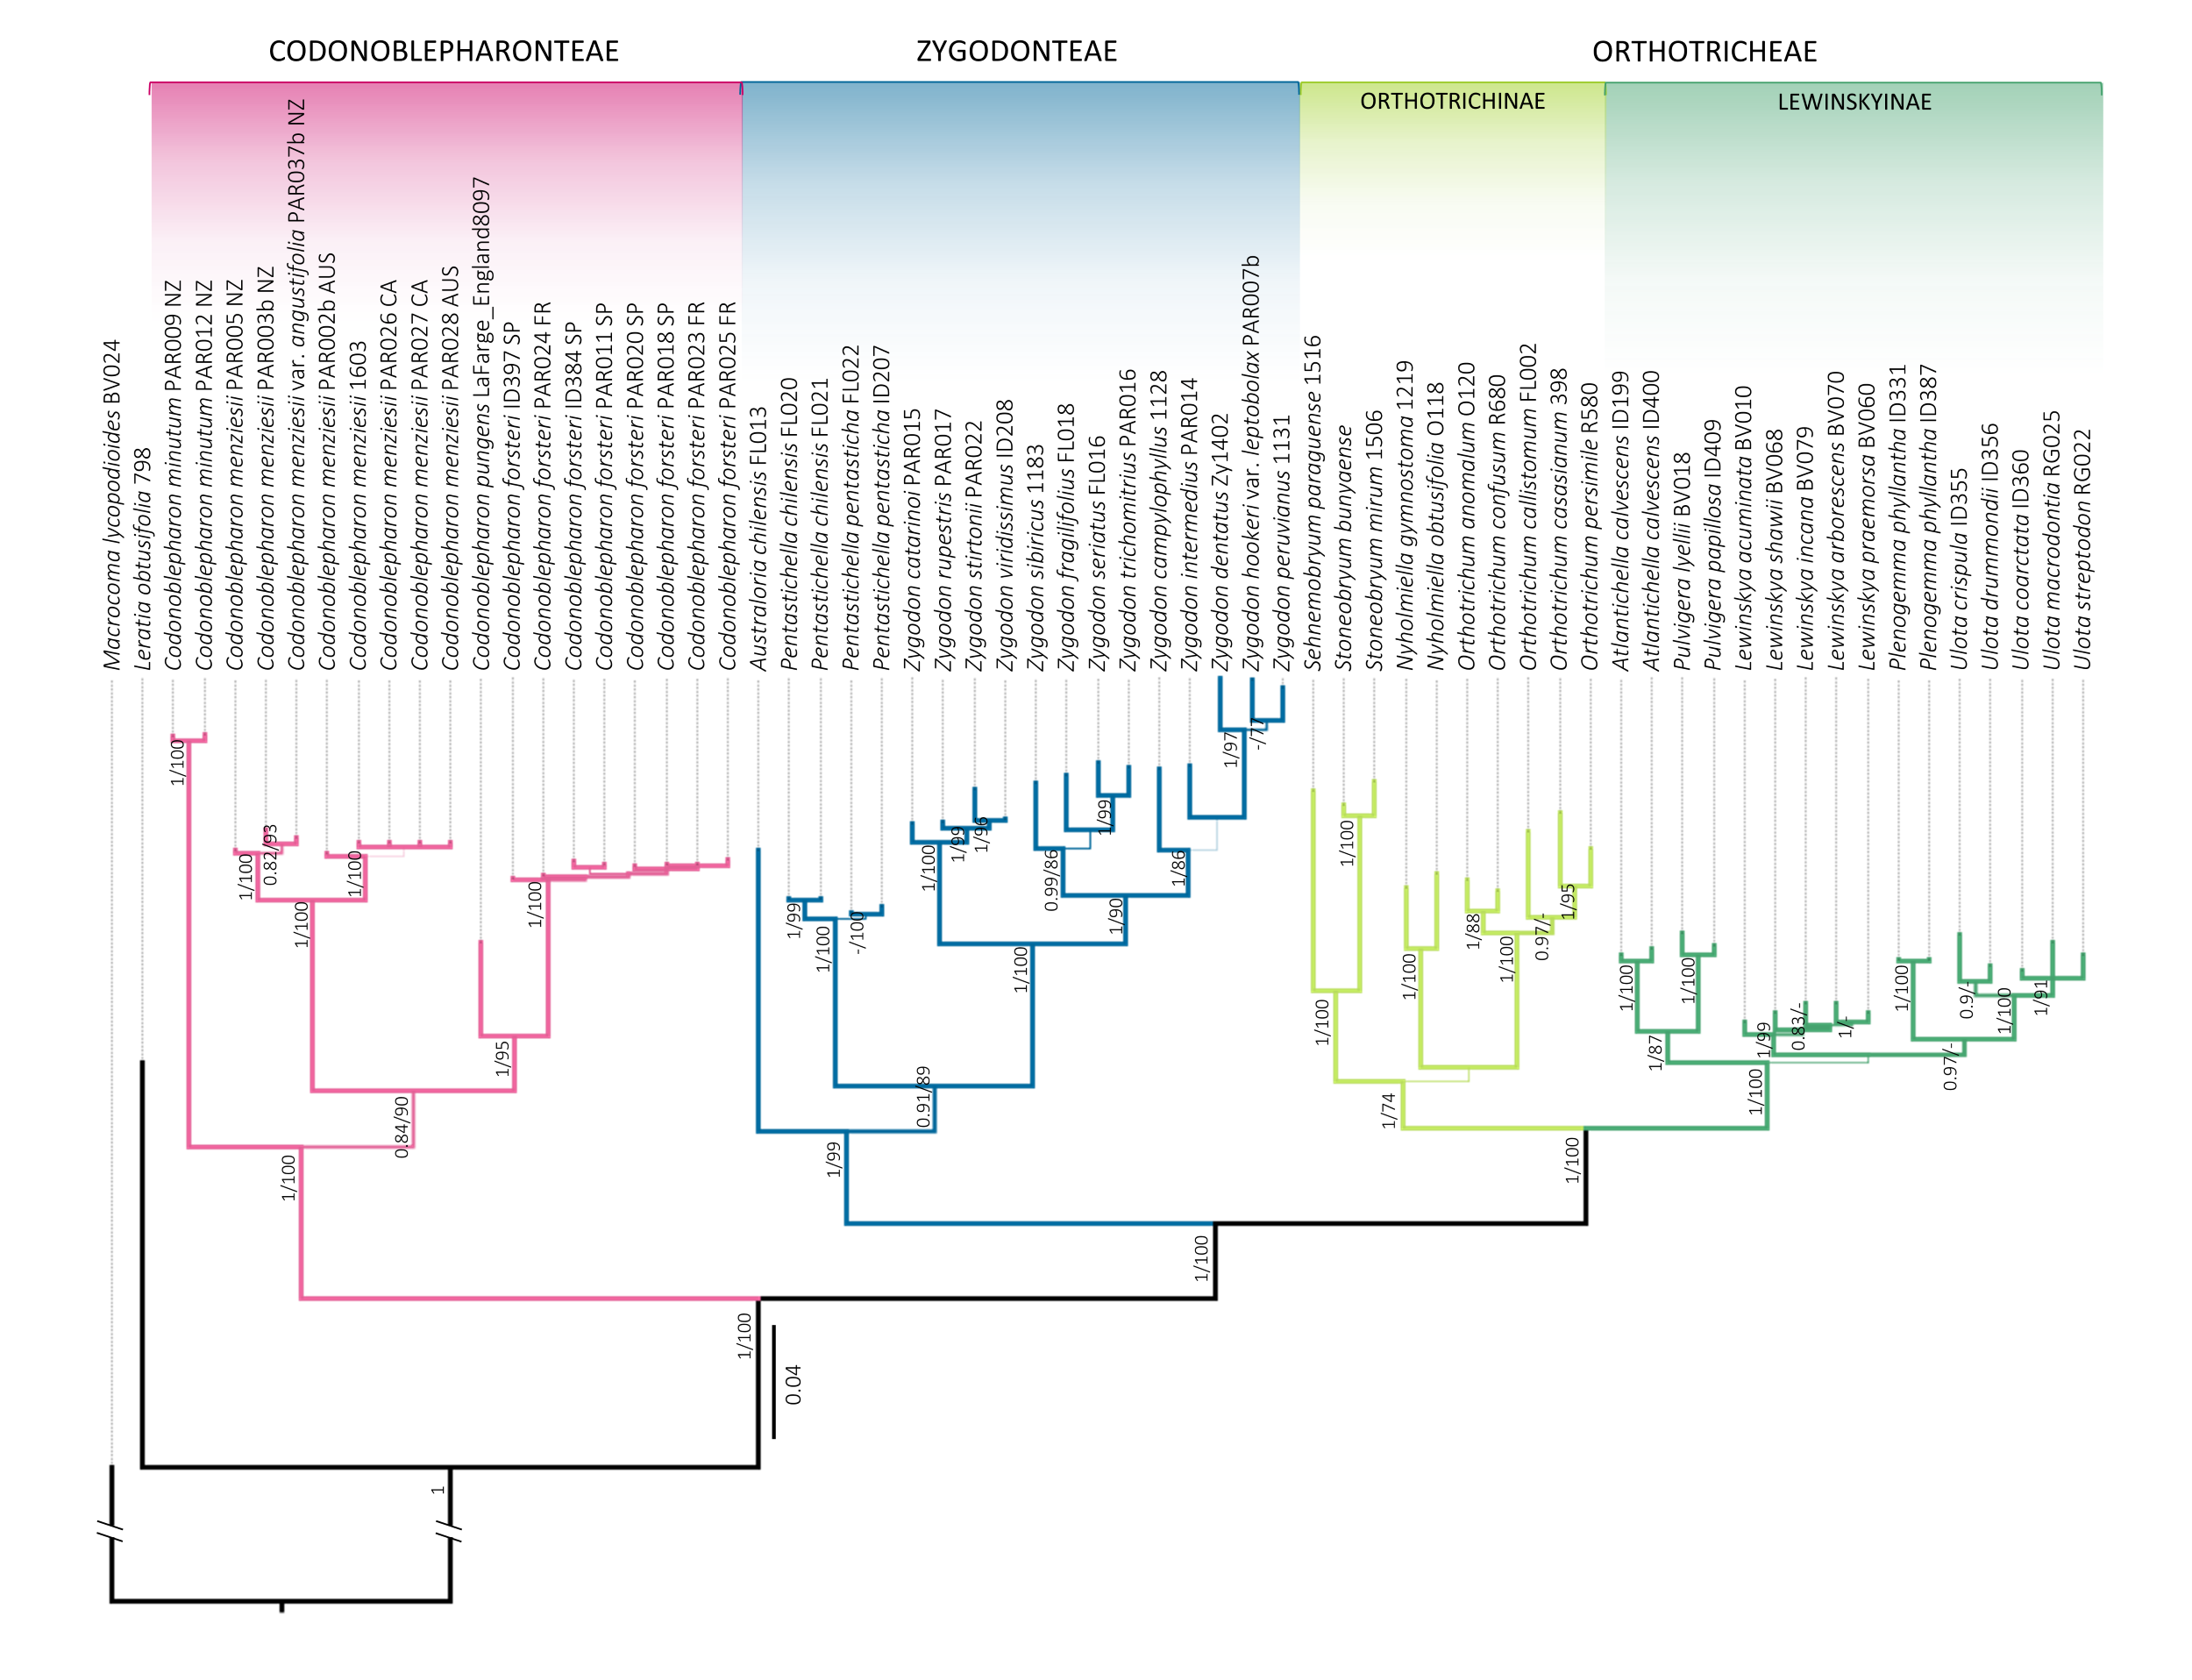 Arbol filogenético con la nueva propuesta taxonómica